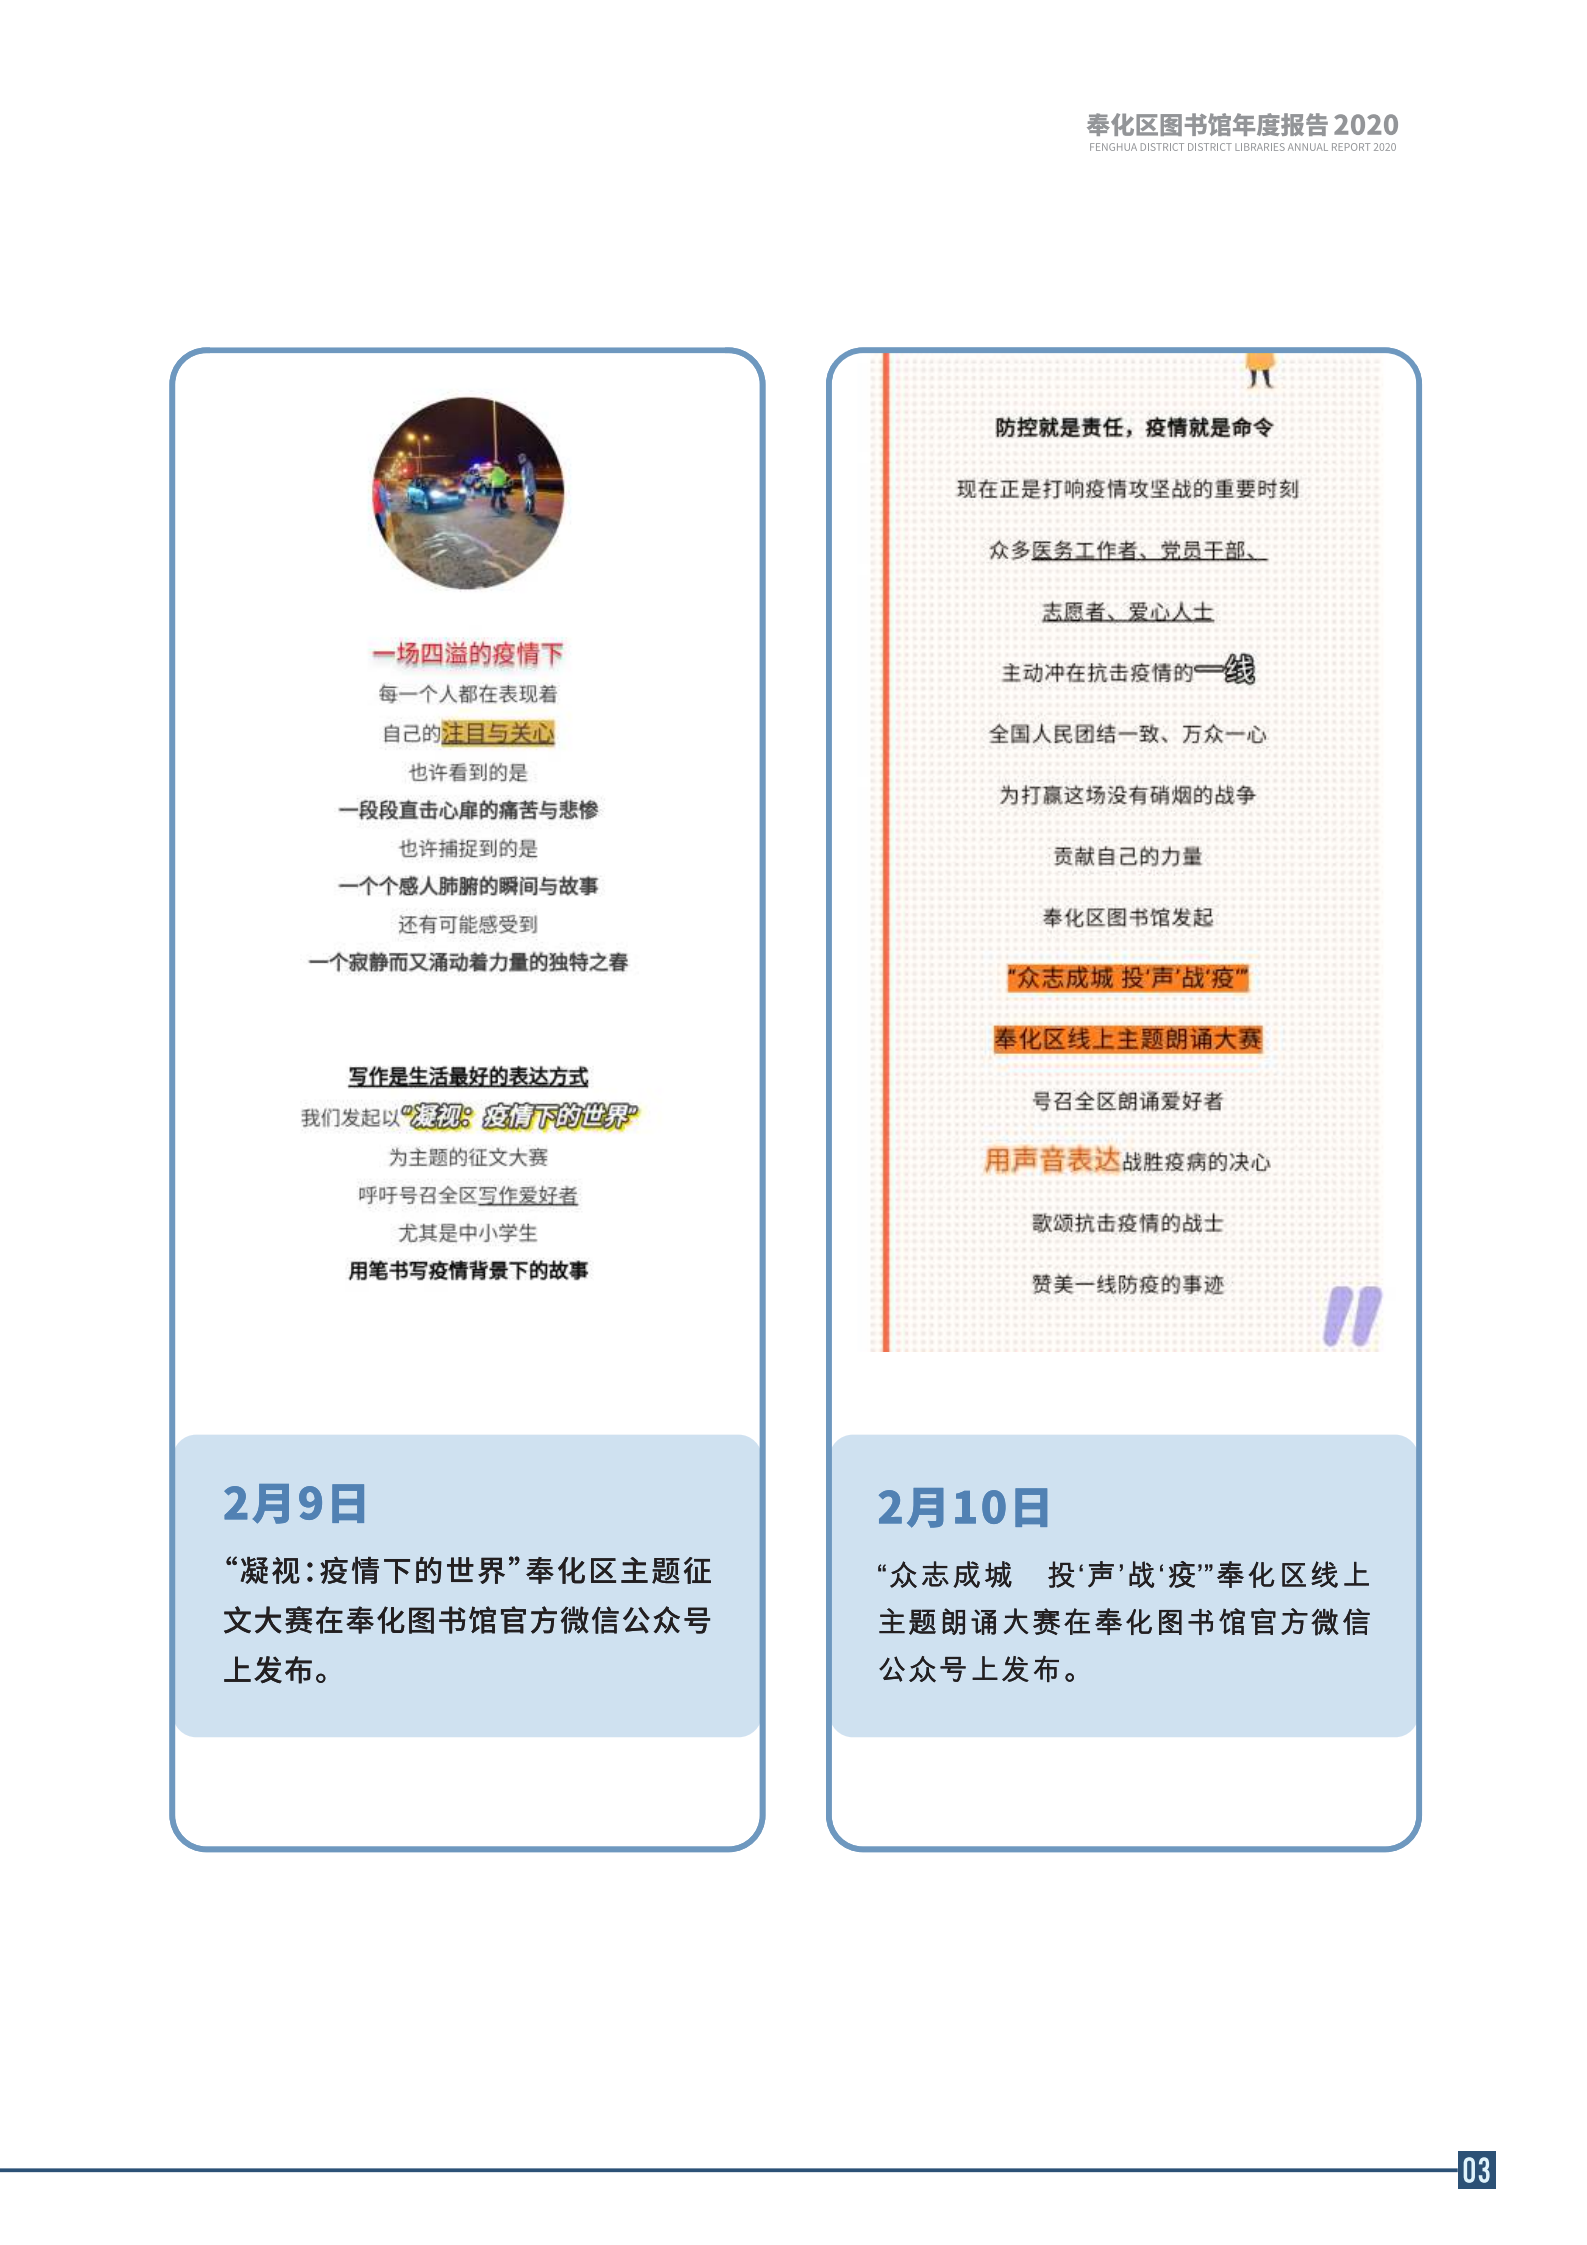 宁波市奉化区图书馆2020年年度报告 终稿_03.png